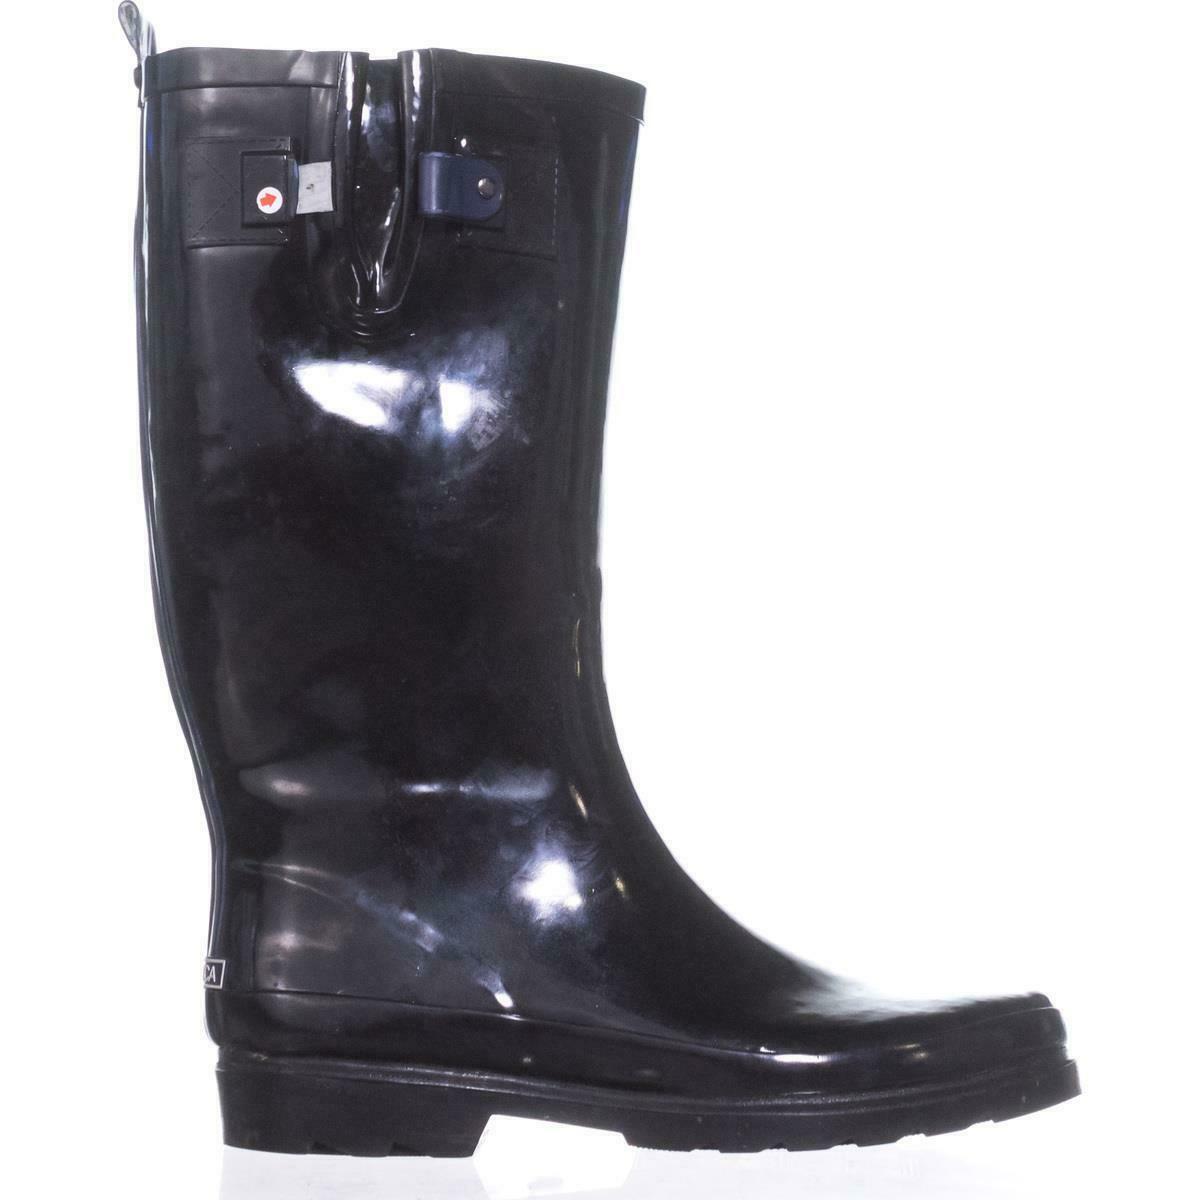 Nautica Finsburt Knee High Rain Boots 445, Black, 9 US / 40 EU - Boots